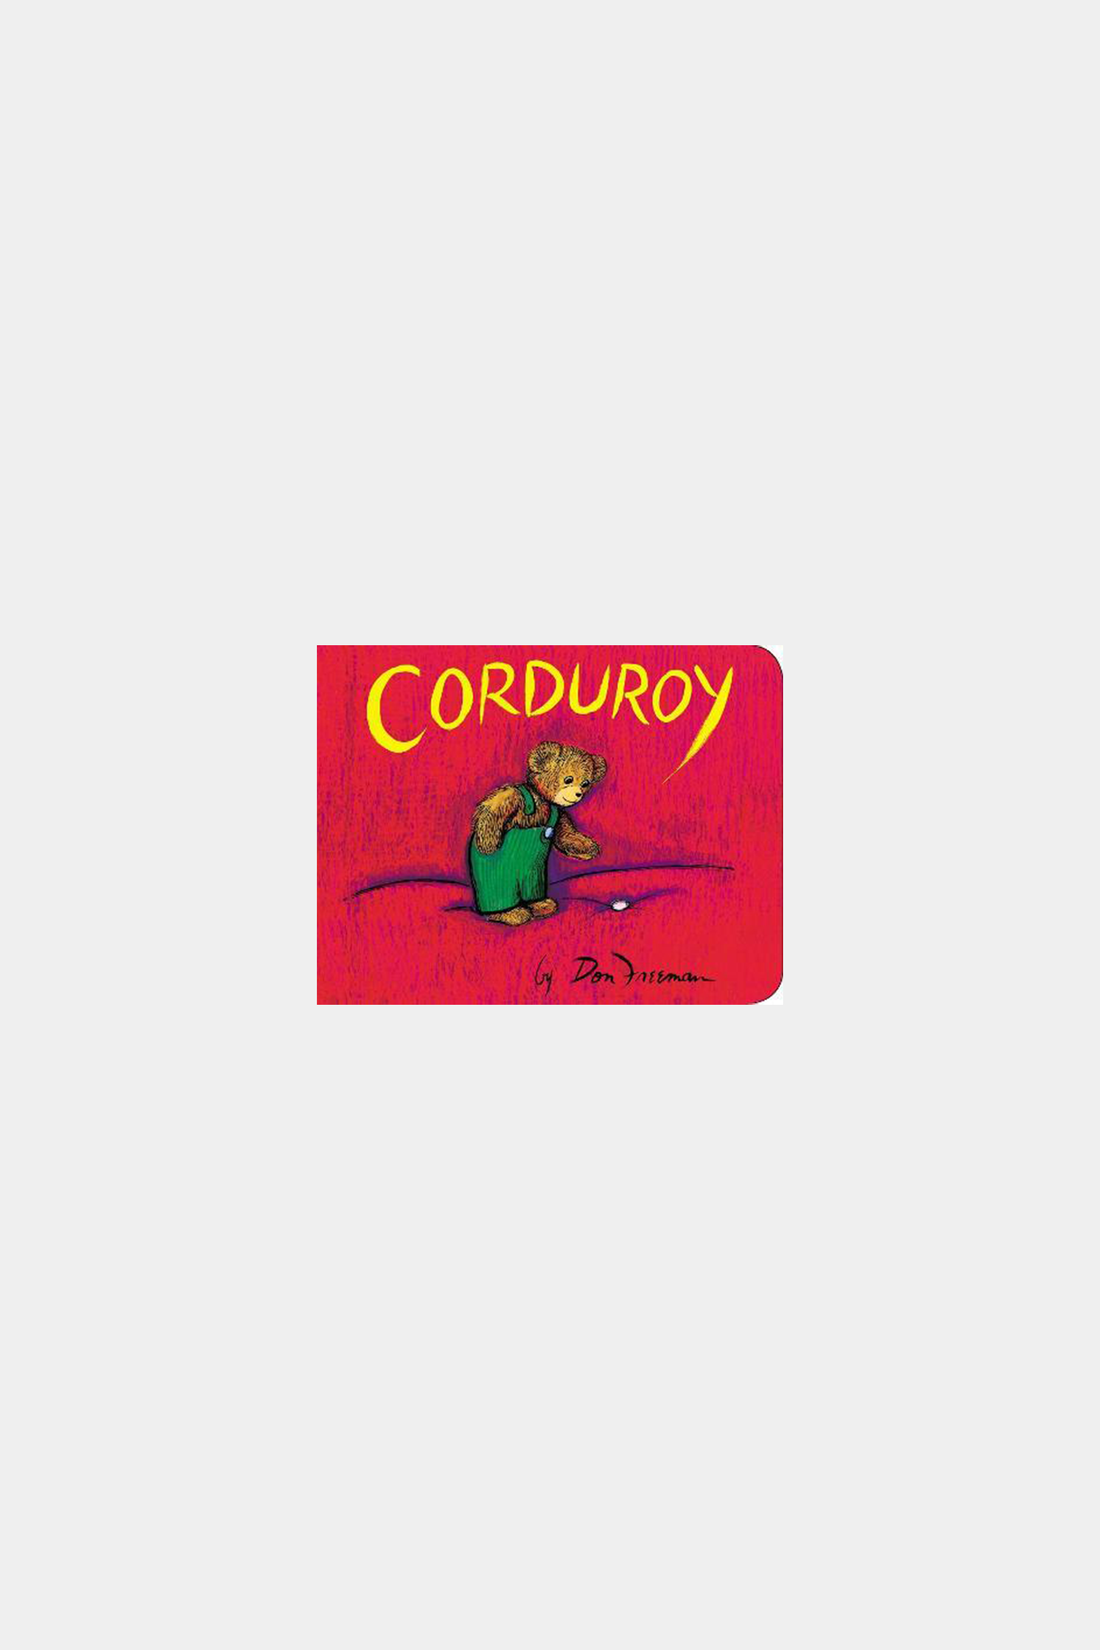 Corduroy - Hardcover